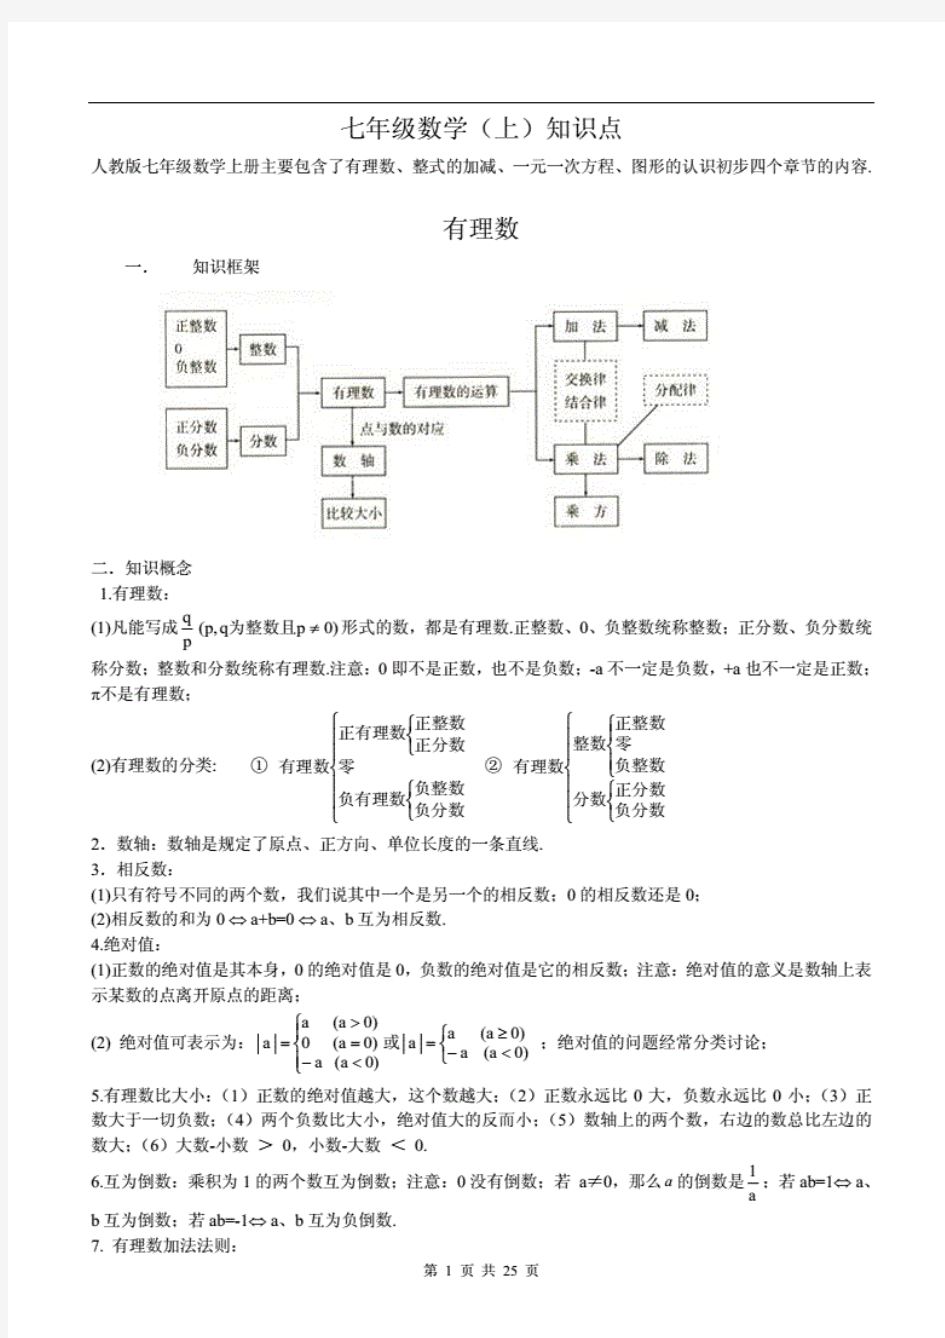 全部初中数学知识点总结(最全)(20210129212506)